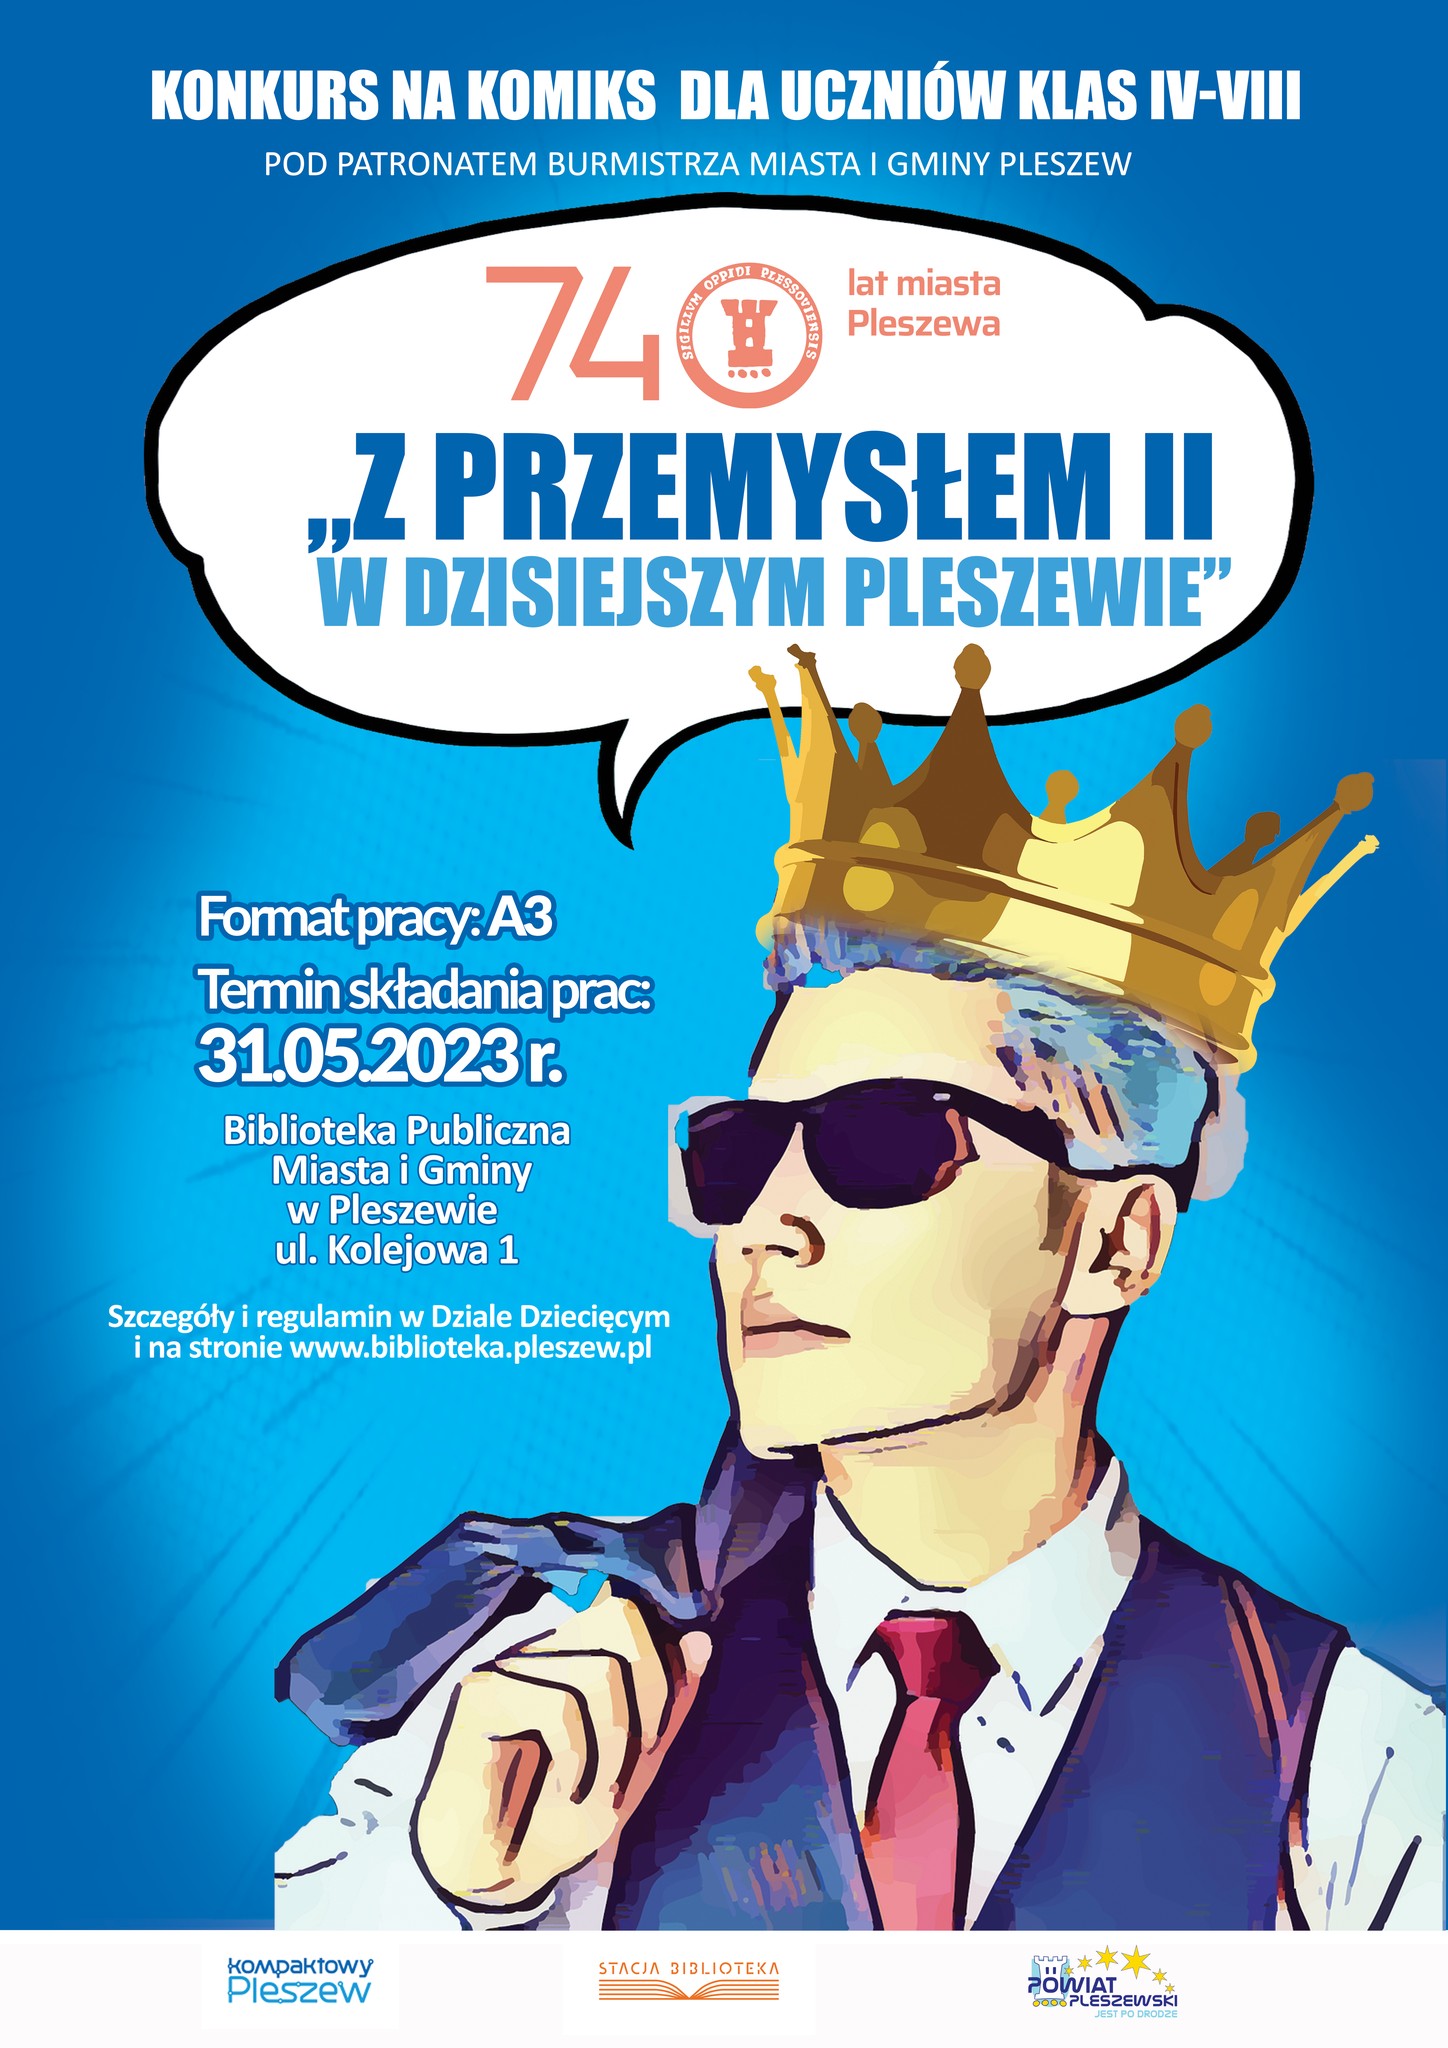 Plakat konkursu na komiks "Z Przemysłem II w dzisiejszym Pleszewie" organizowanego przez Bibliotekę Publiczną Miasta i Gminy Pleszew.